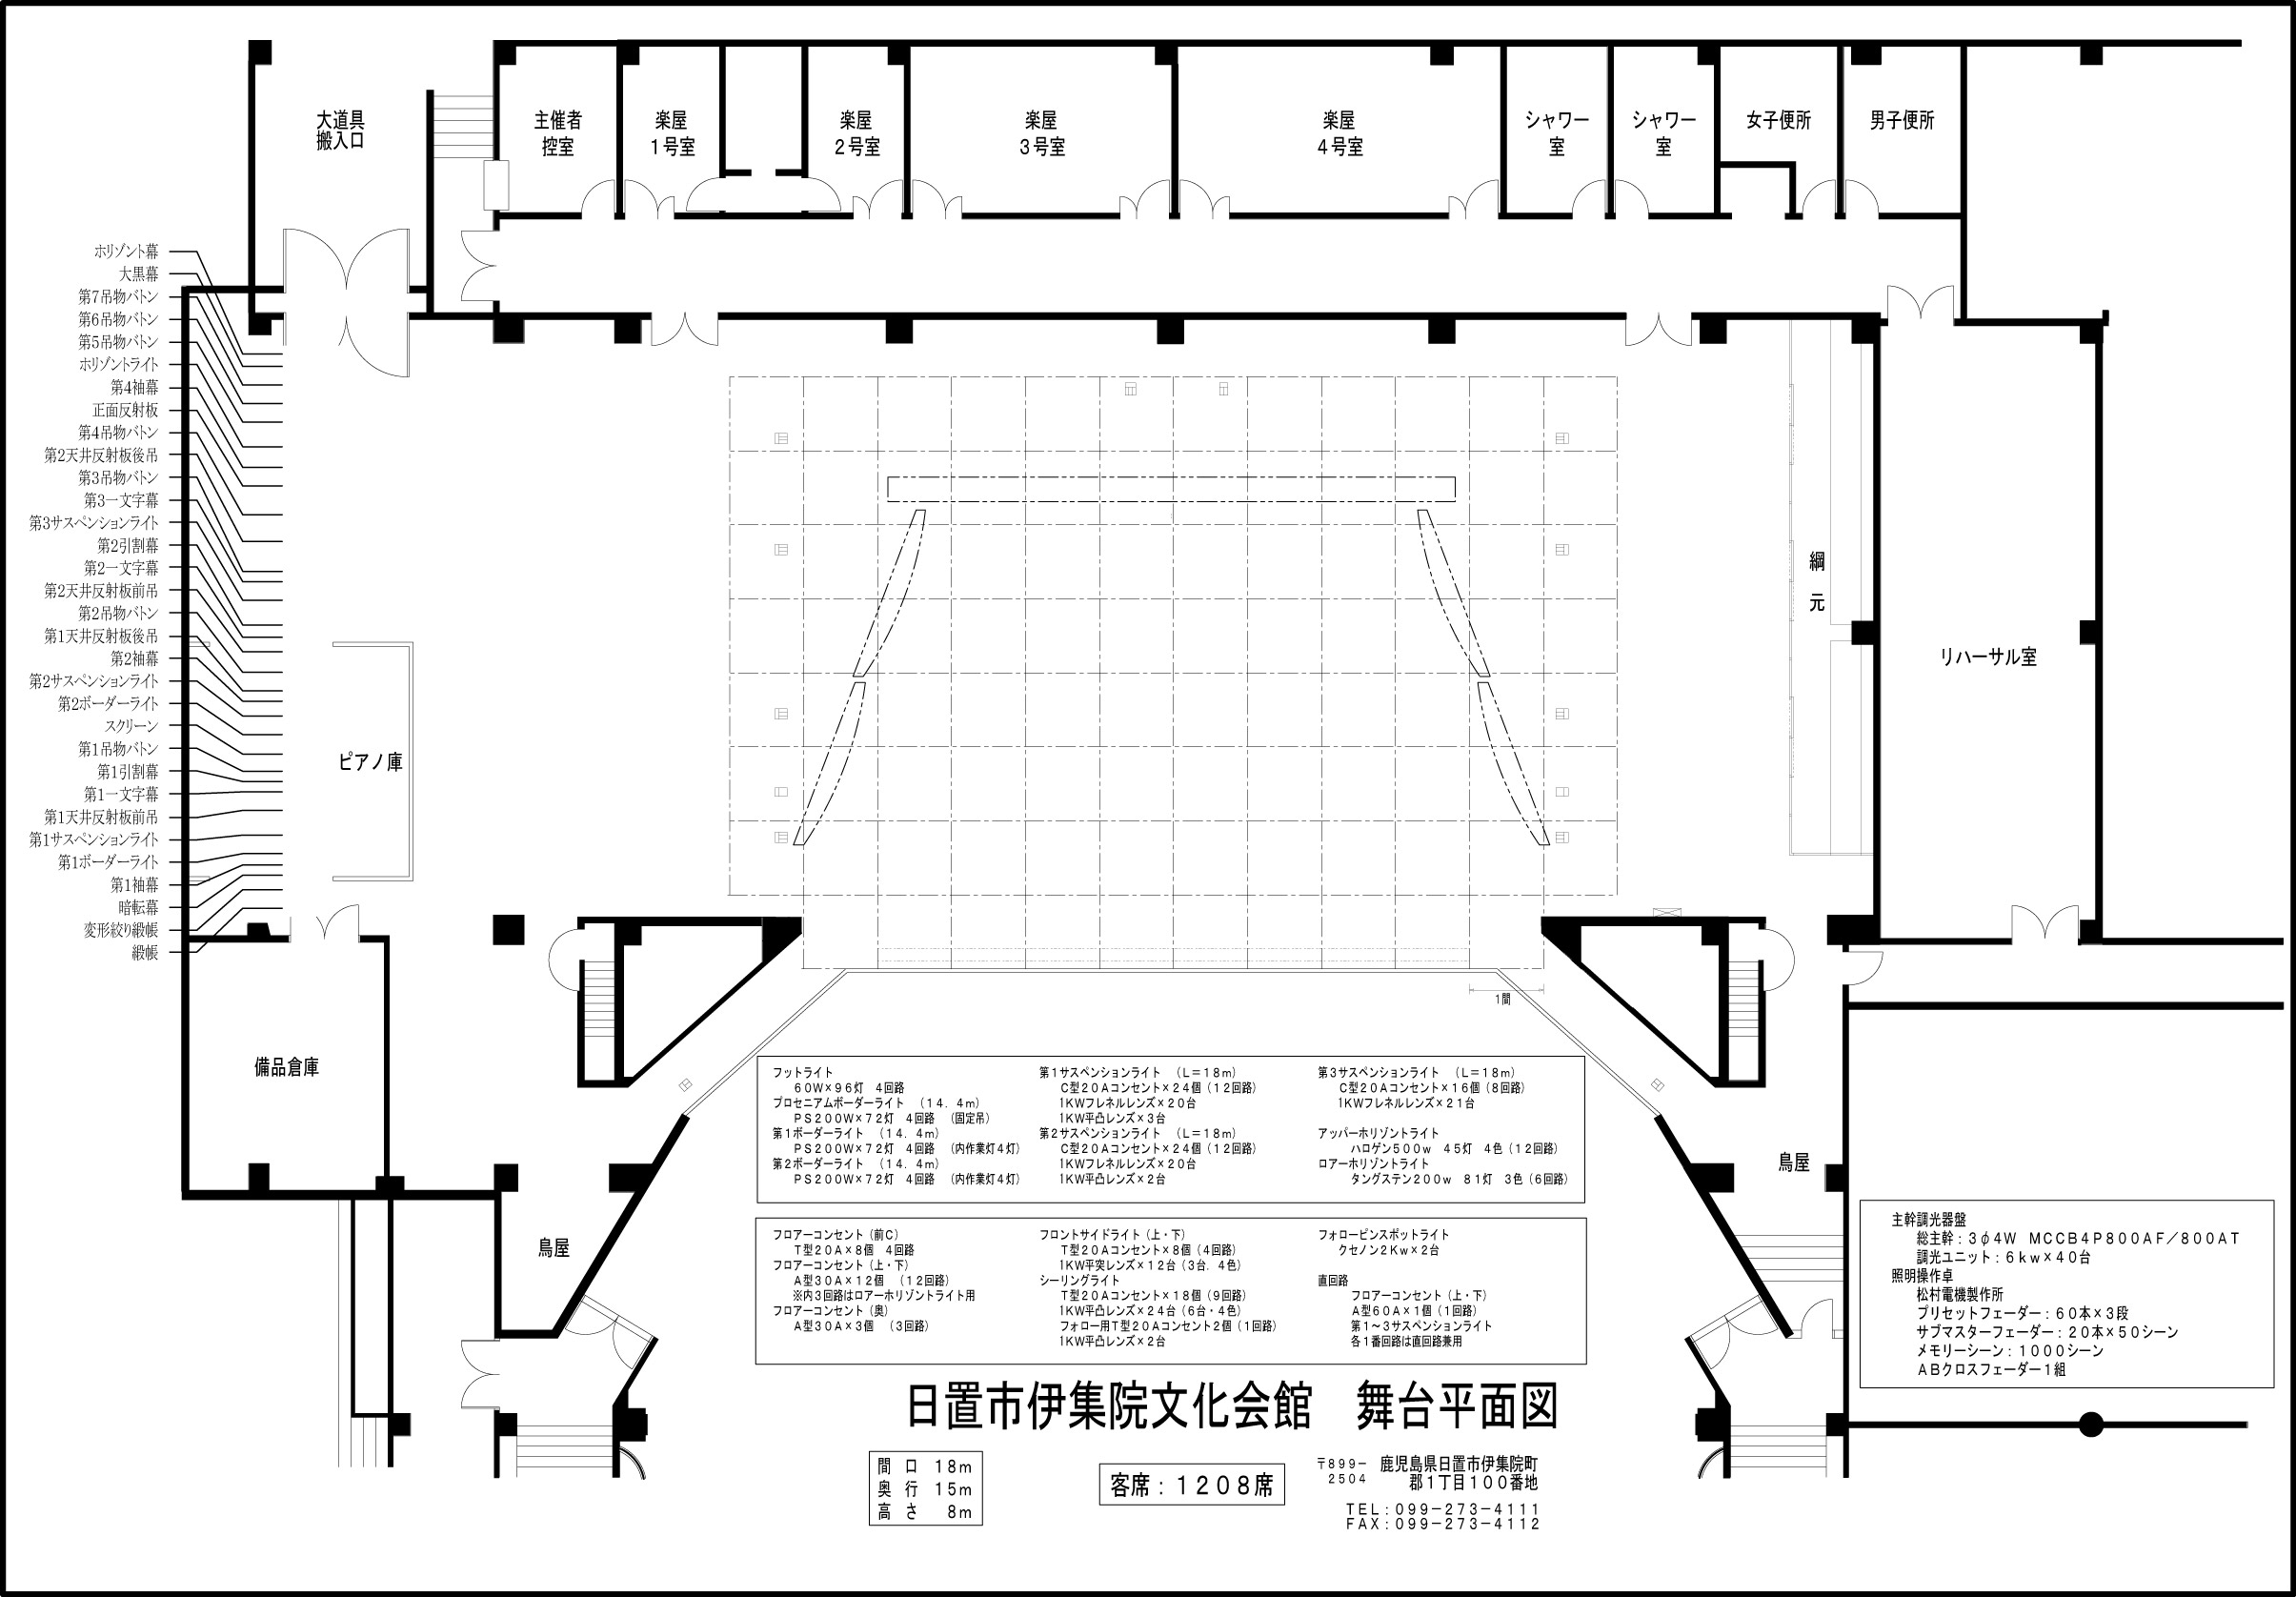 イベントホール平面図